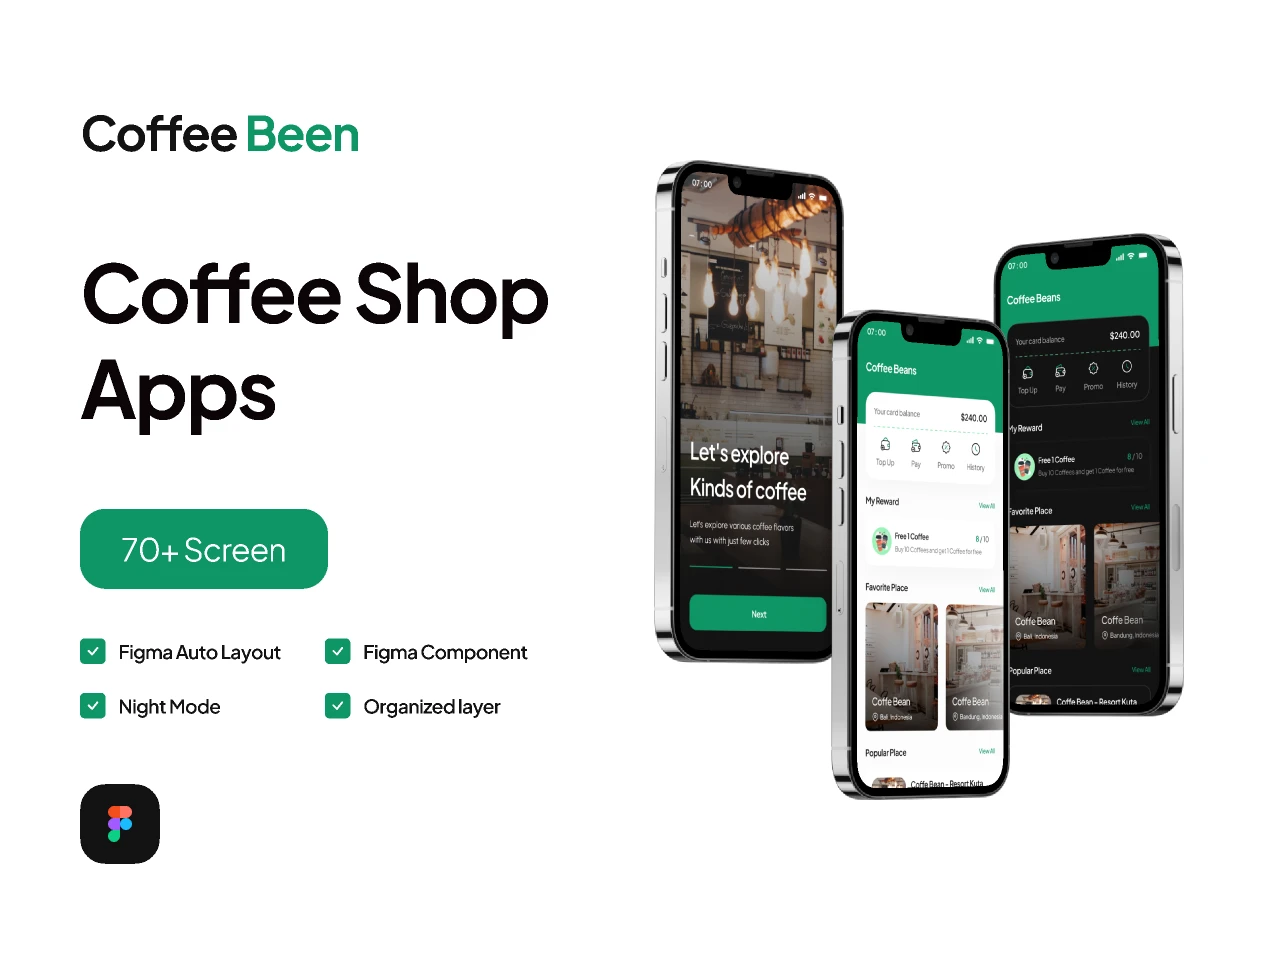 Coffe Shop Mobile App- Pickolab Studio for Figma and Adobe XD